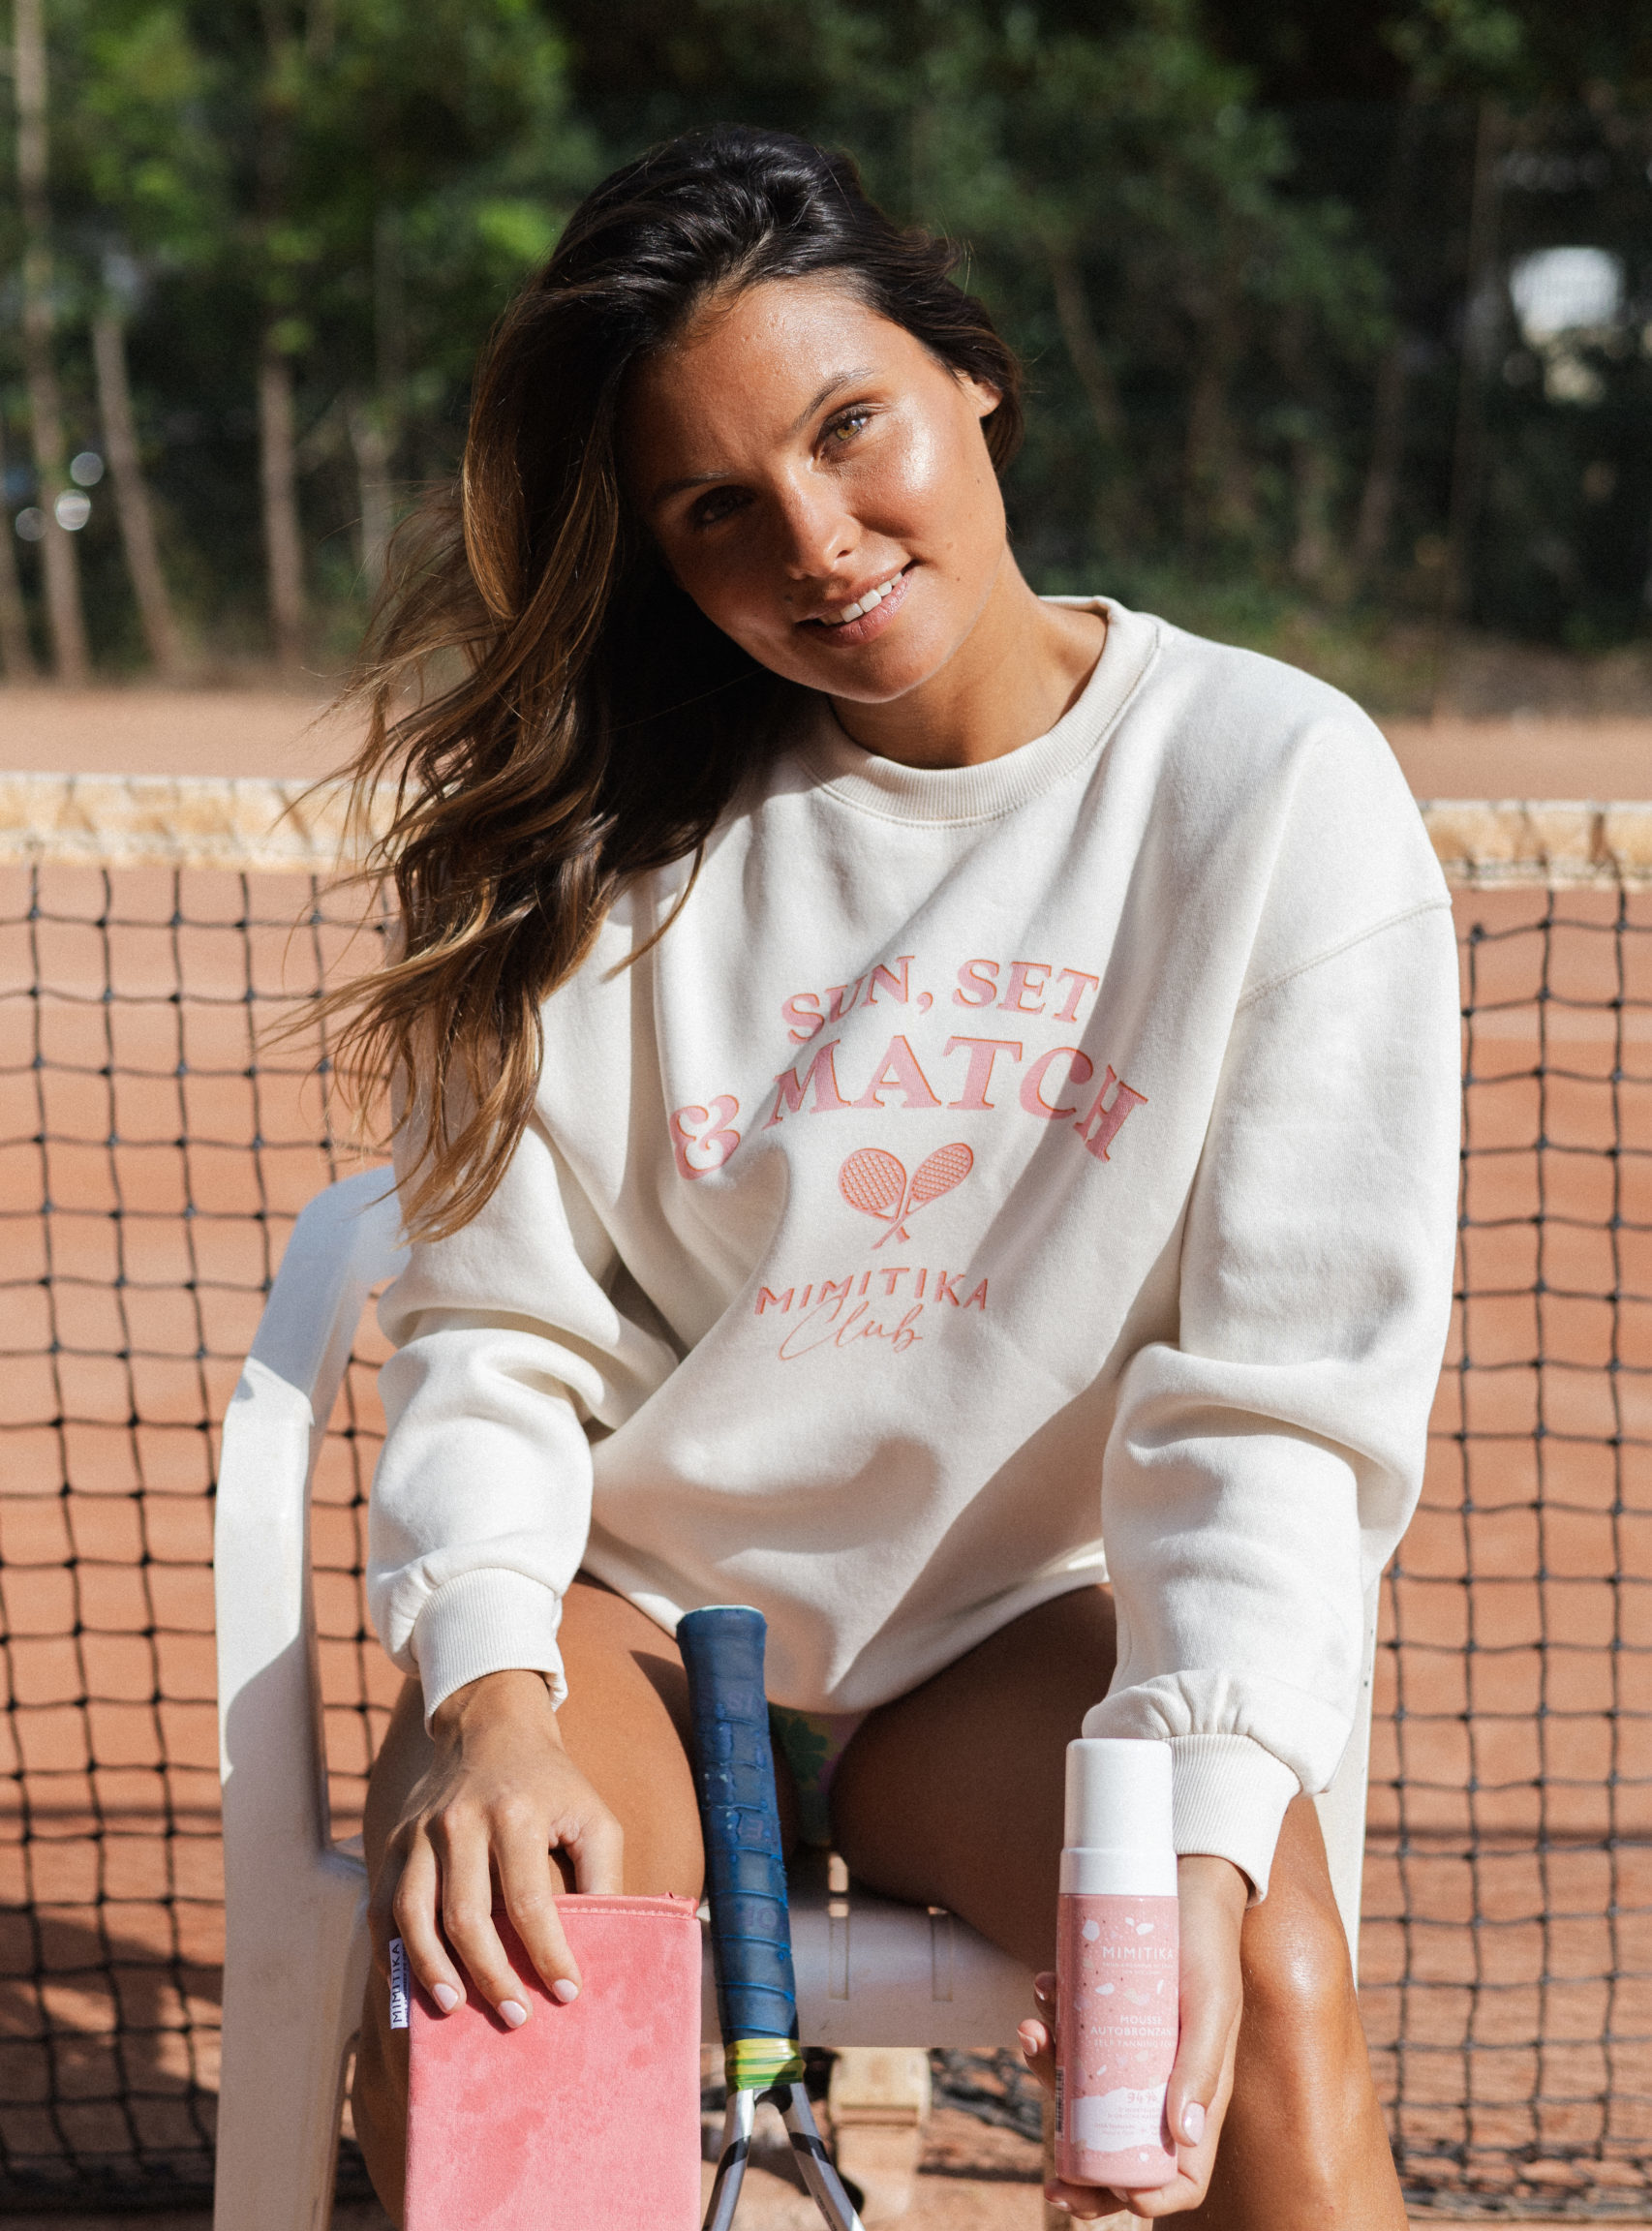 Une jeune femme sur un cours de tennis présente un produit de cosmétique. Elle est chatain et la peau mat. Elle a un maquillage très solaire et naturel.